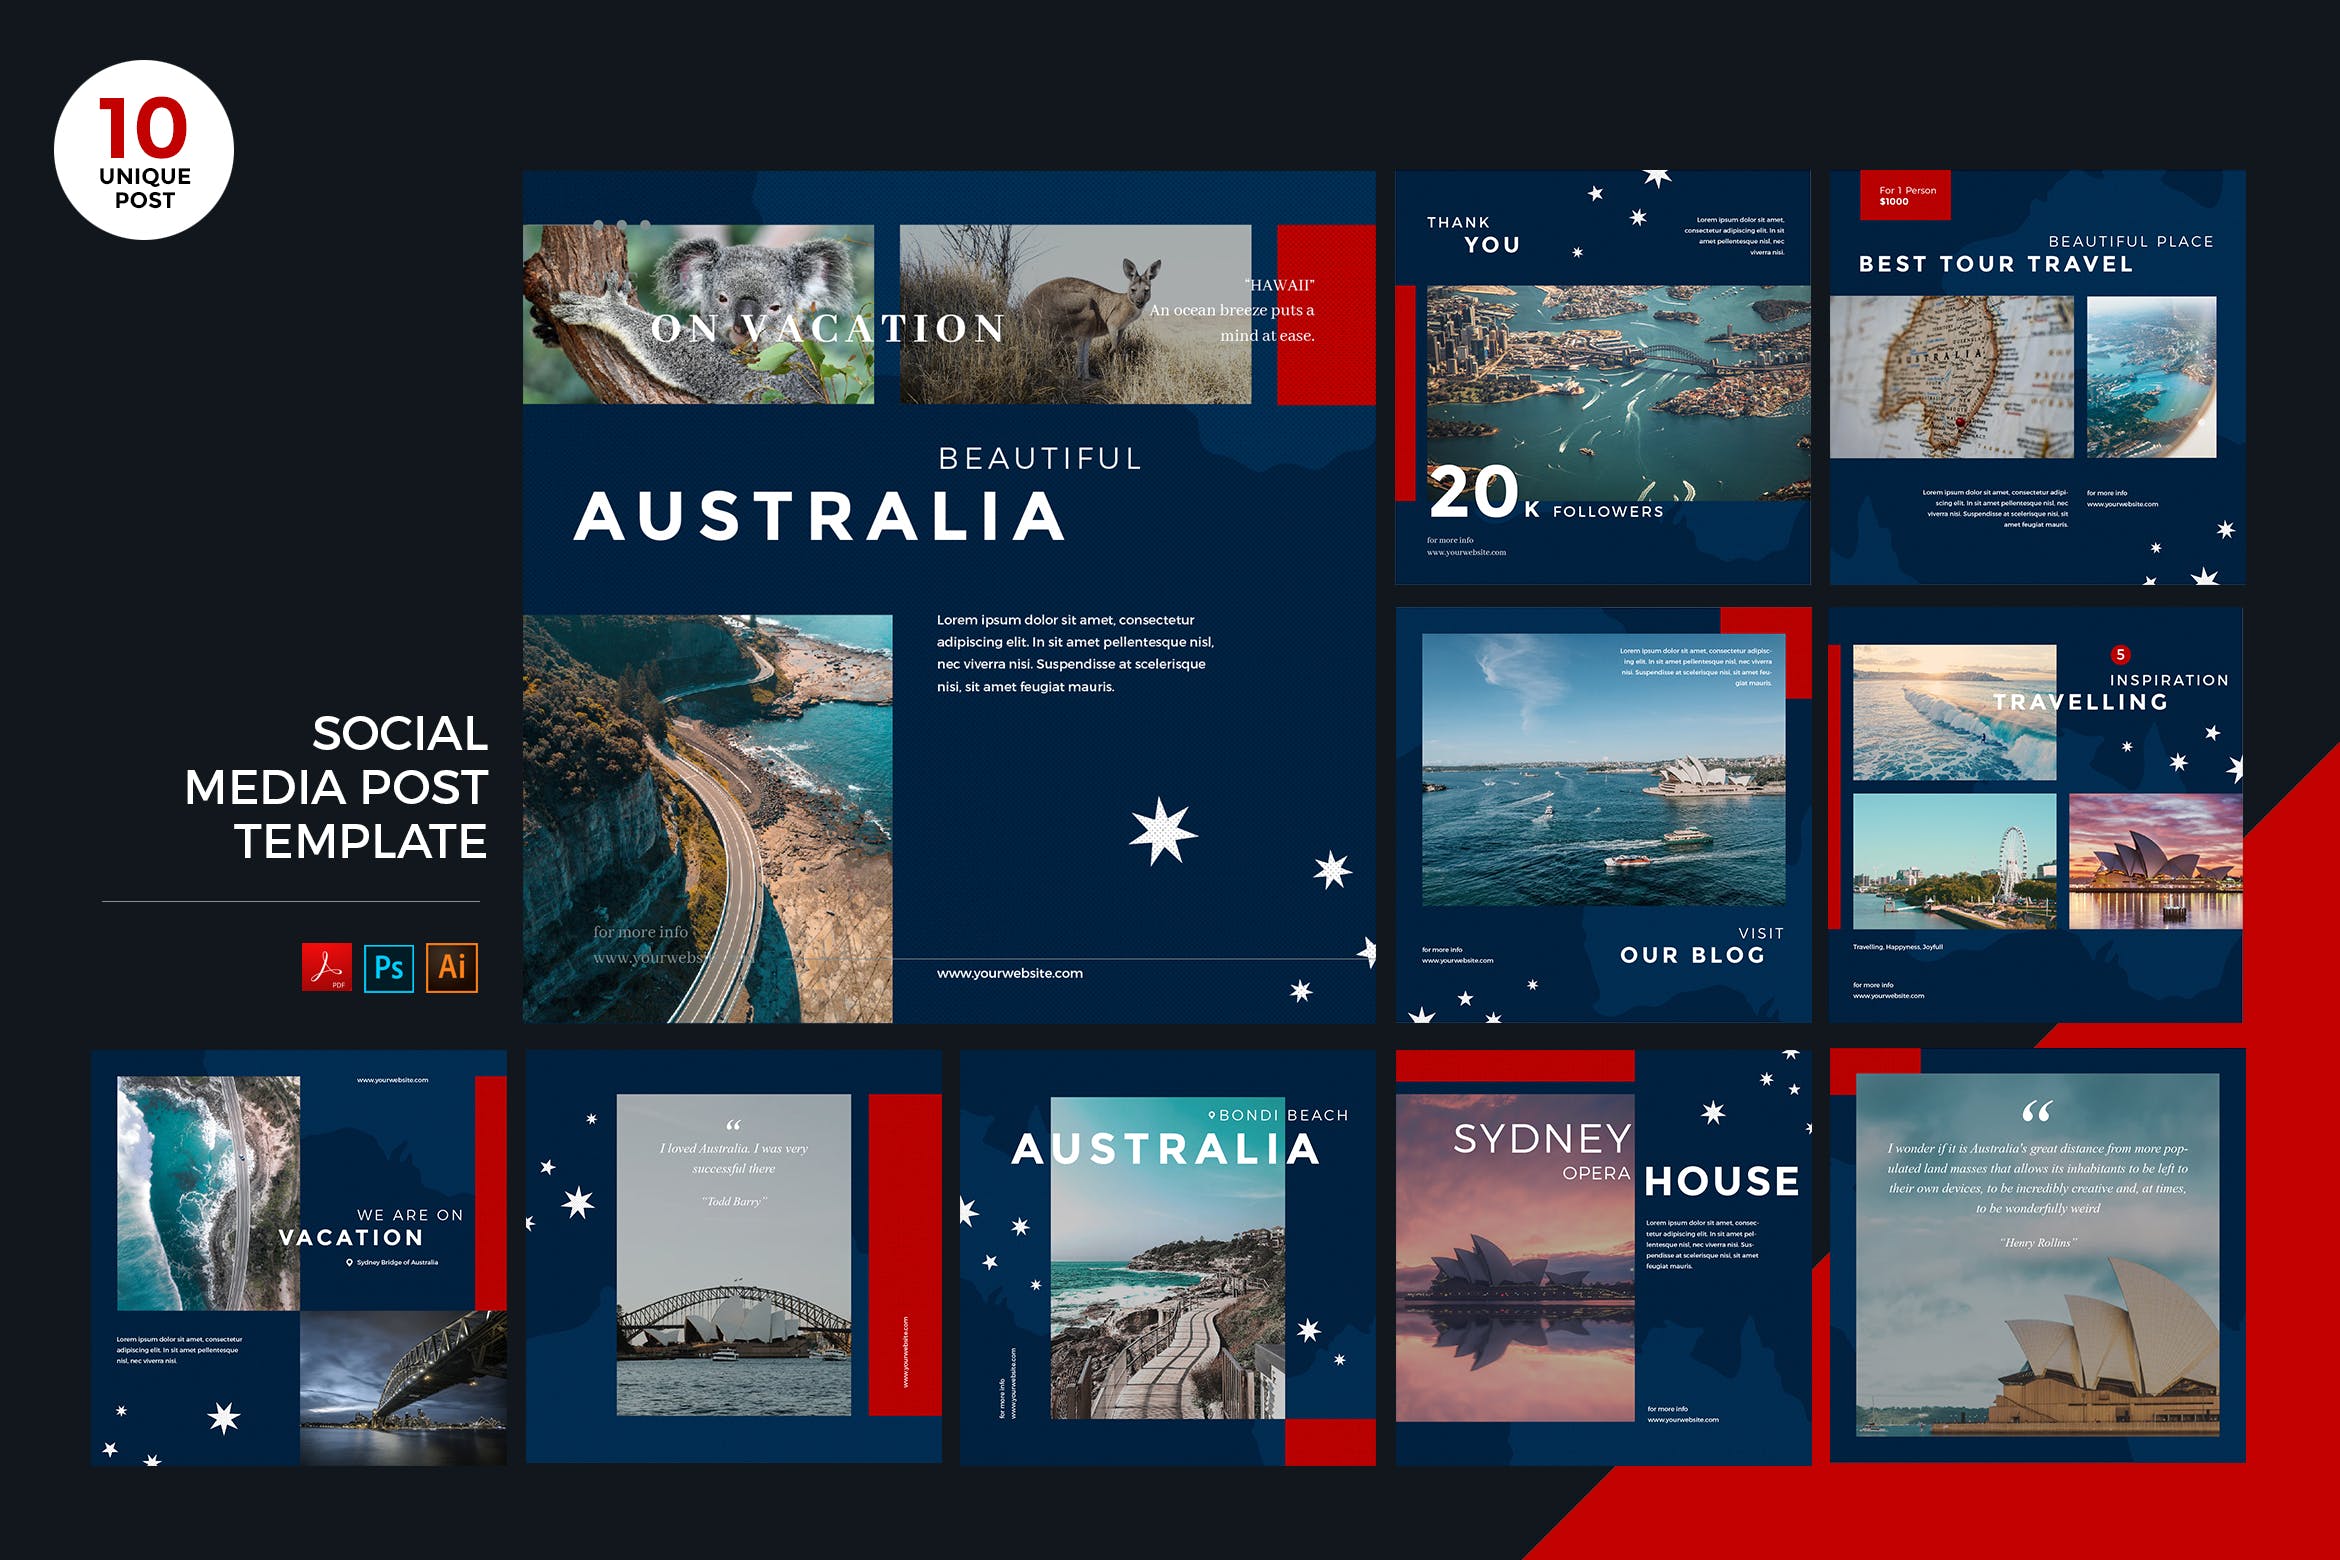 澳大利亚旅游推广社交媒体PSD&AI模板16图库精选 Travel To Australia Social Media Kit PSD & AI插图